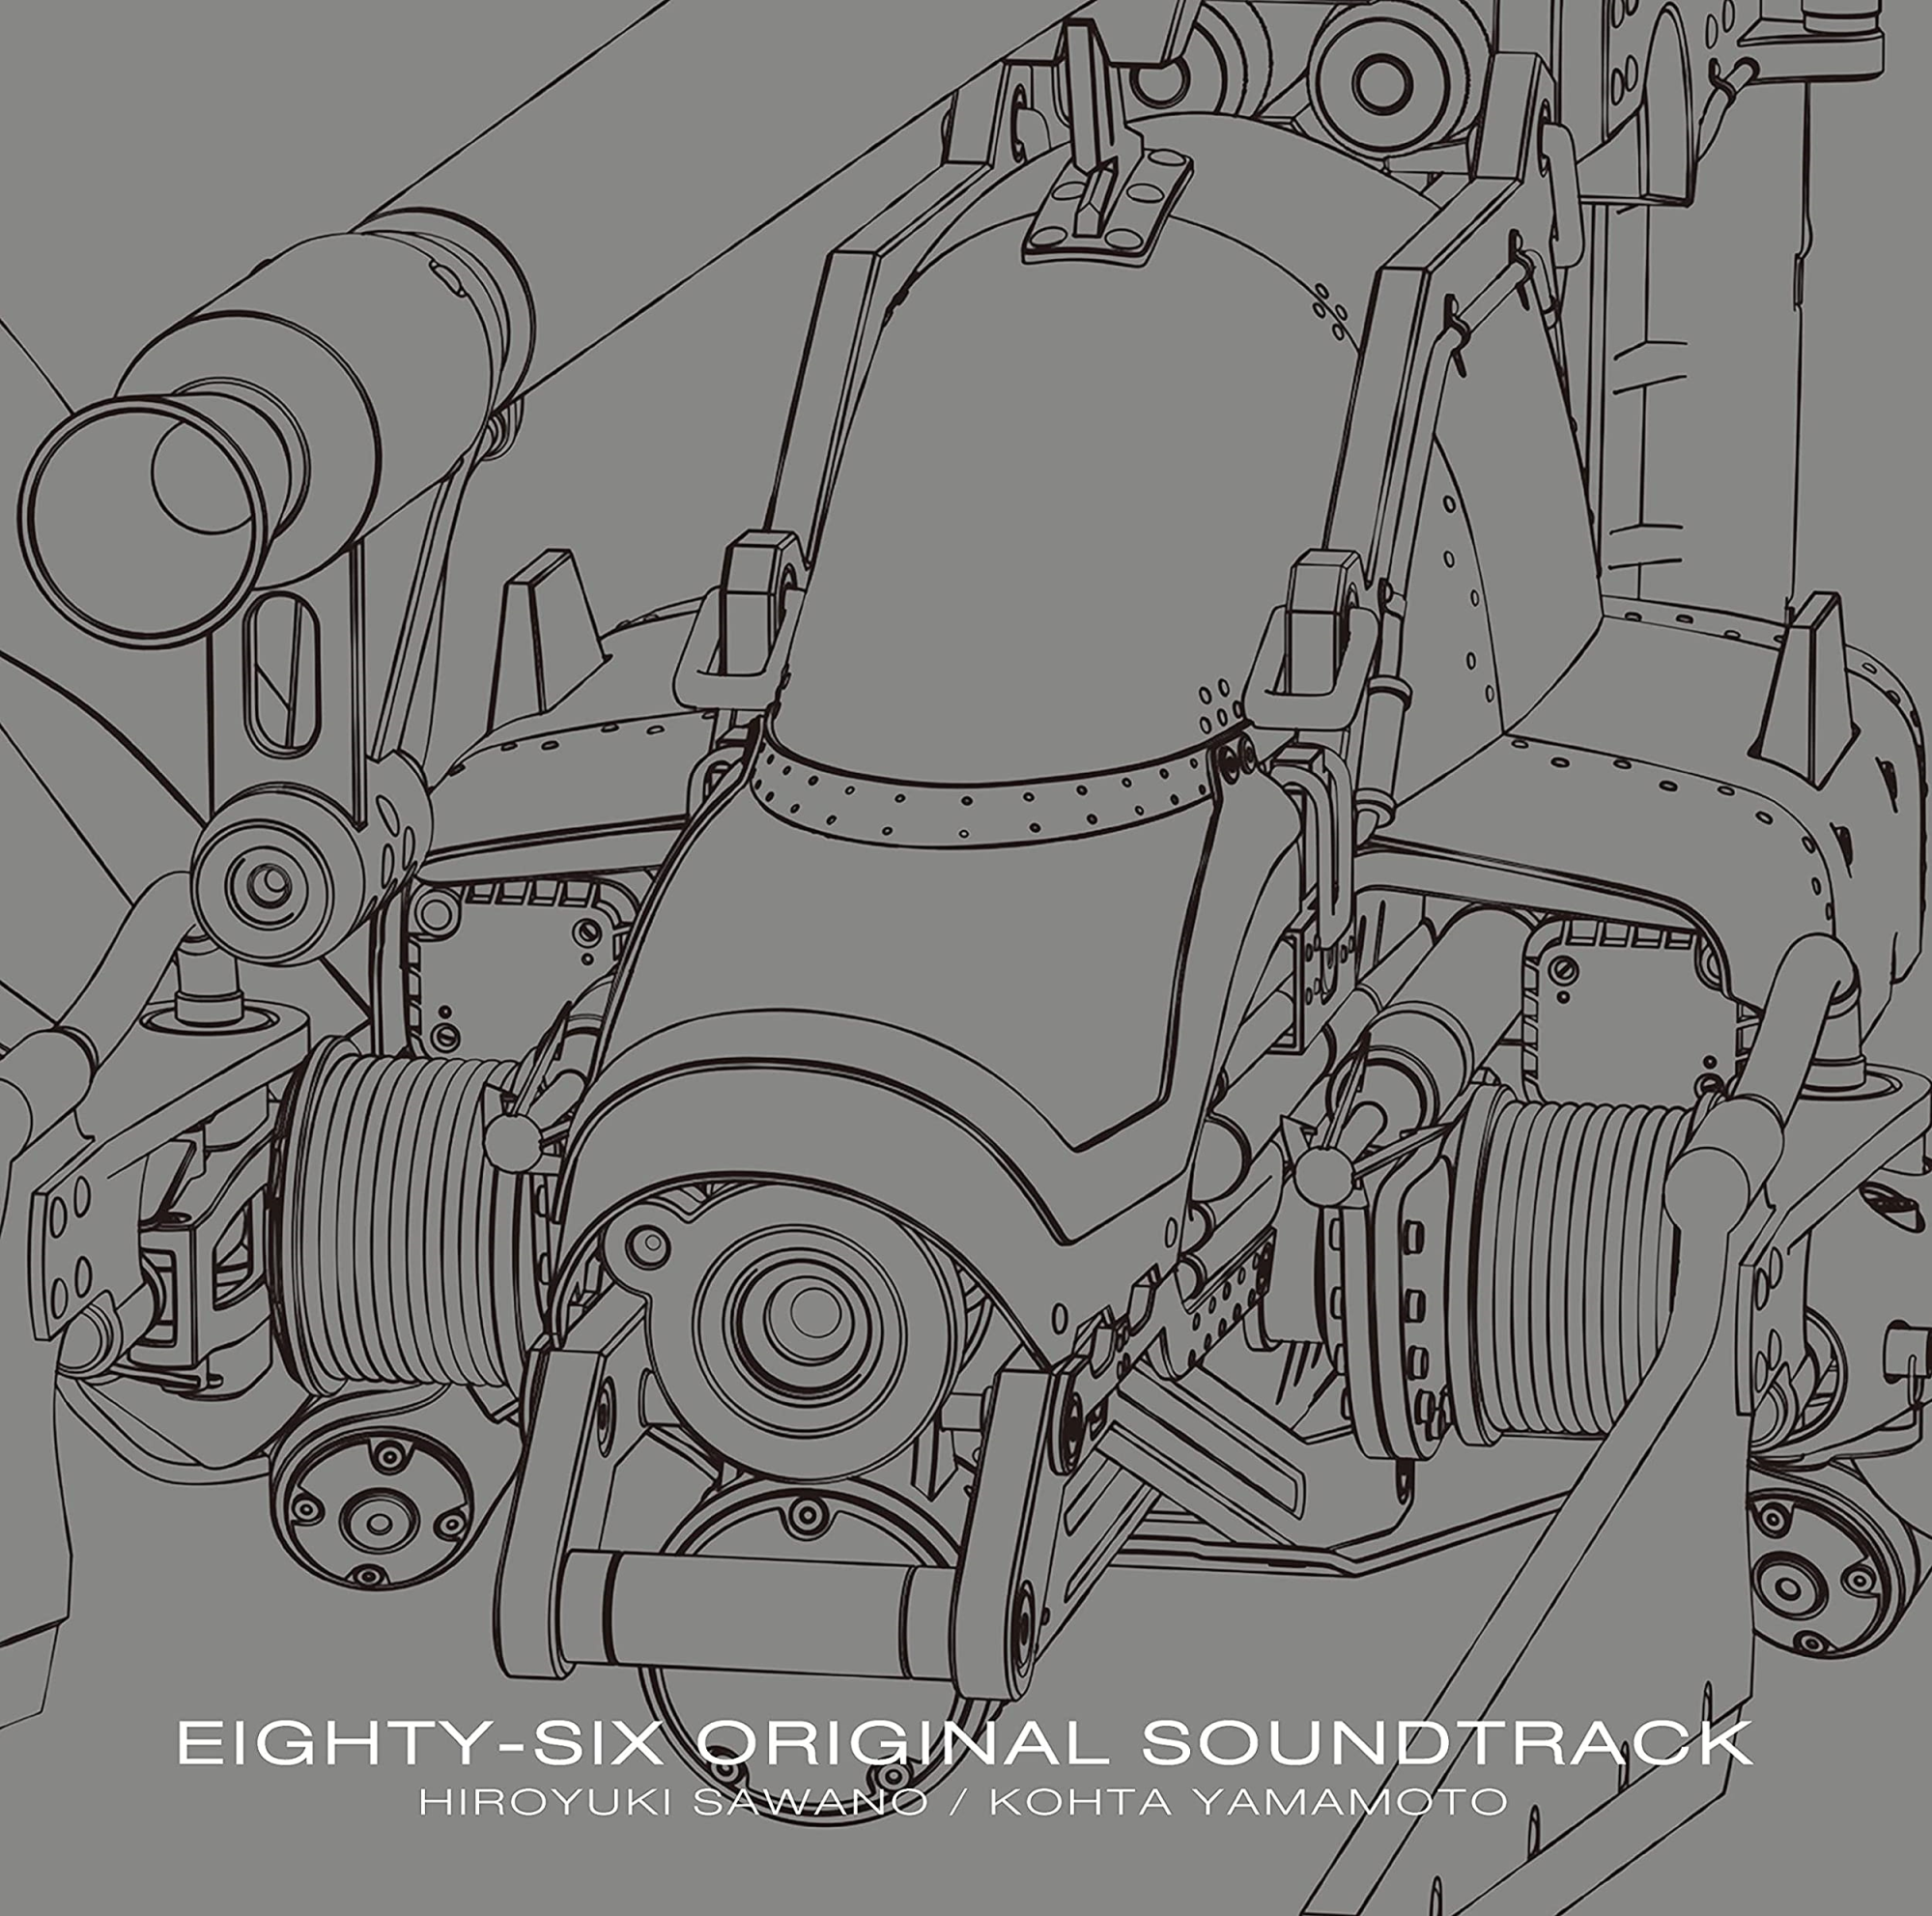 Audio Cd Hiroyuki Sawano / Kohta Yamamoto - Eighty-Six Original Soundtrack (2 Cd) NUOVO SIGILLATO, EDIZIONE DEL 07/07/2021 SUBITO DISPONIBILE